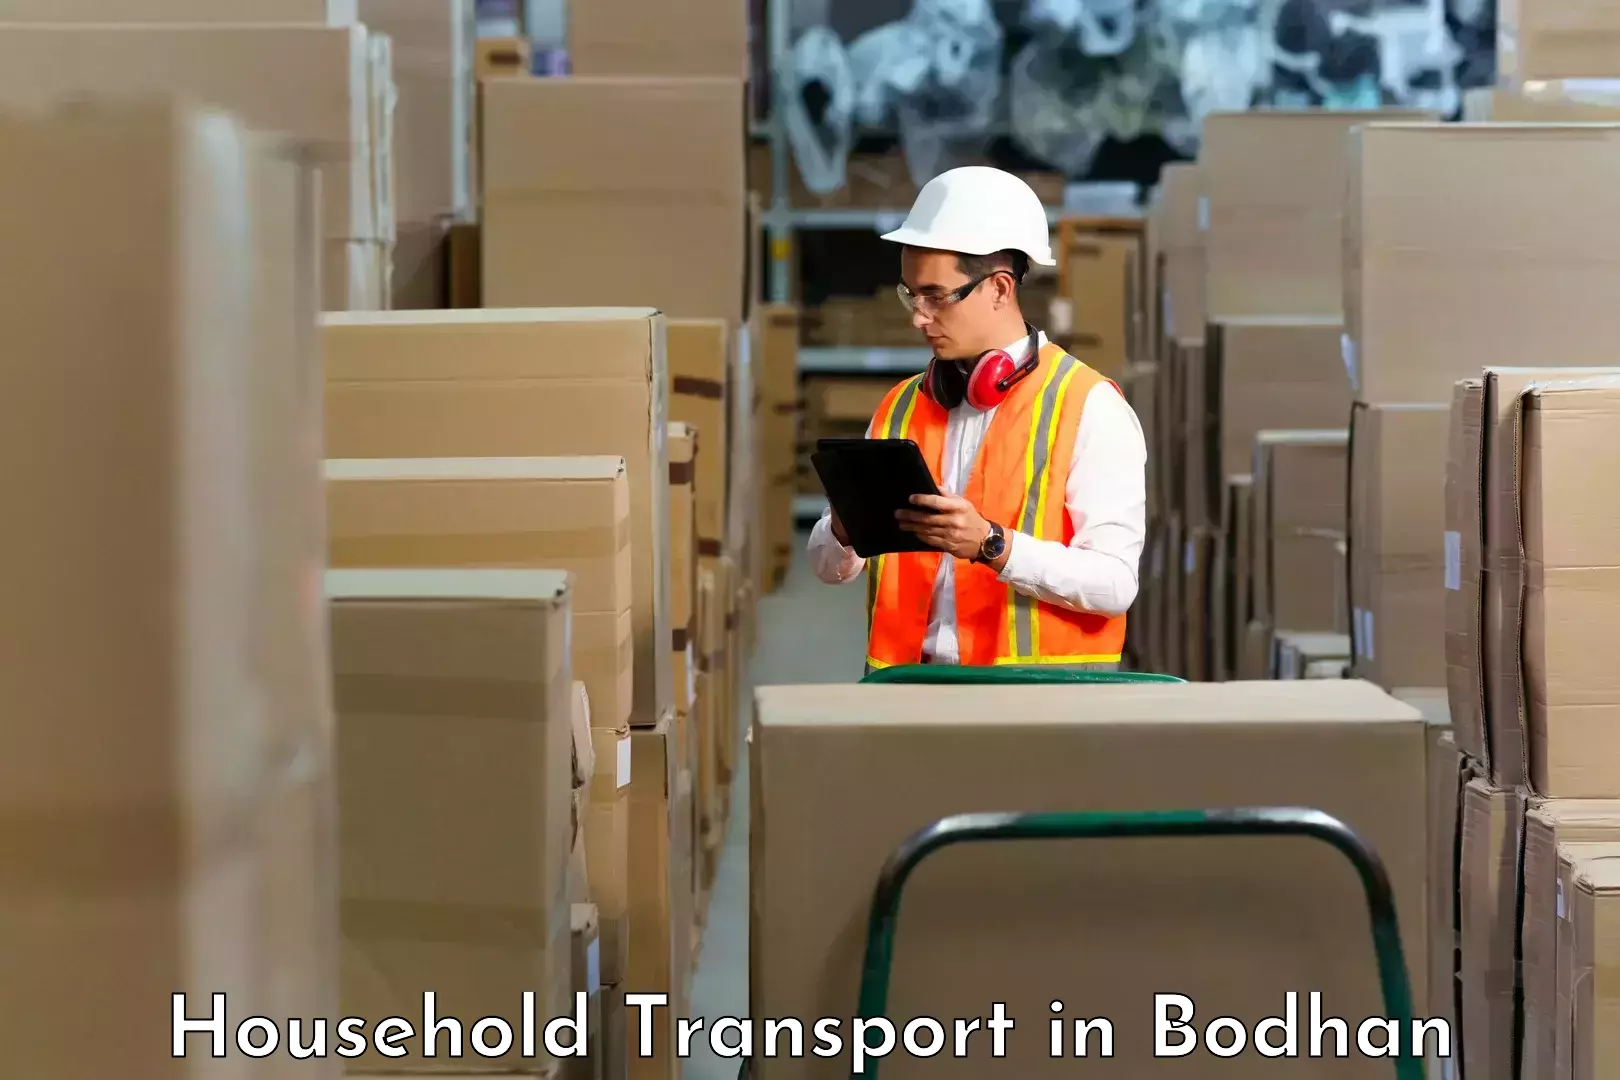 Household goods transport in Bodhan